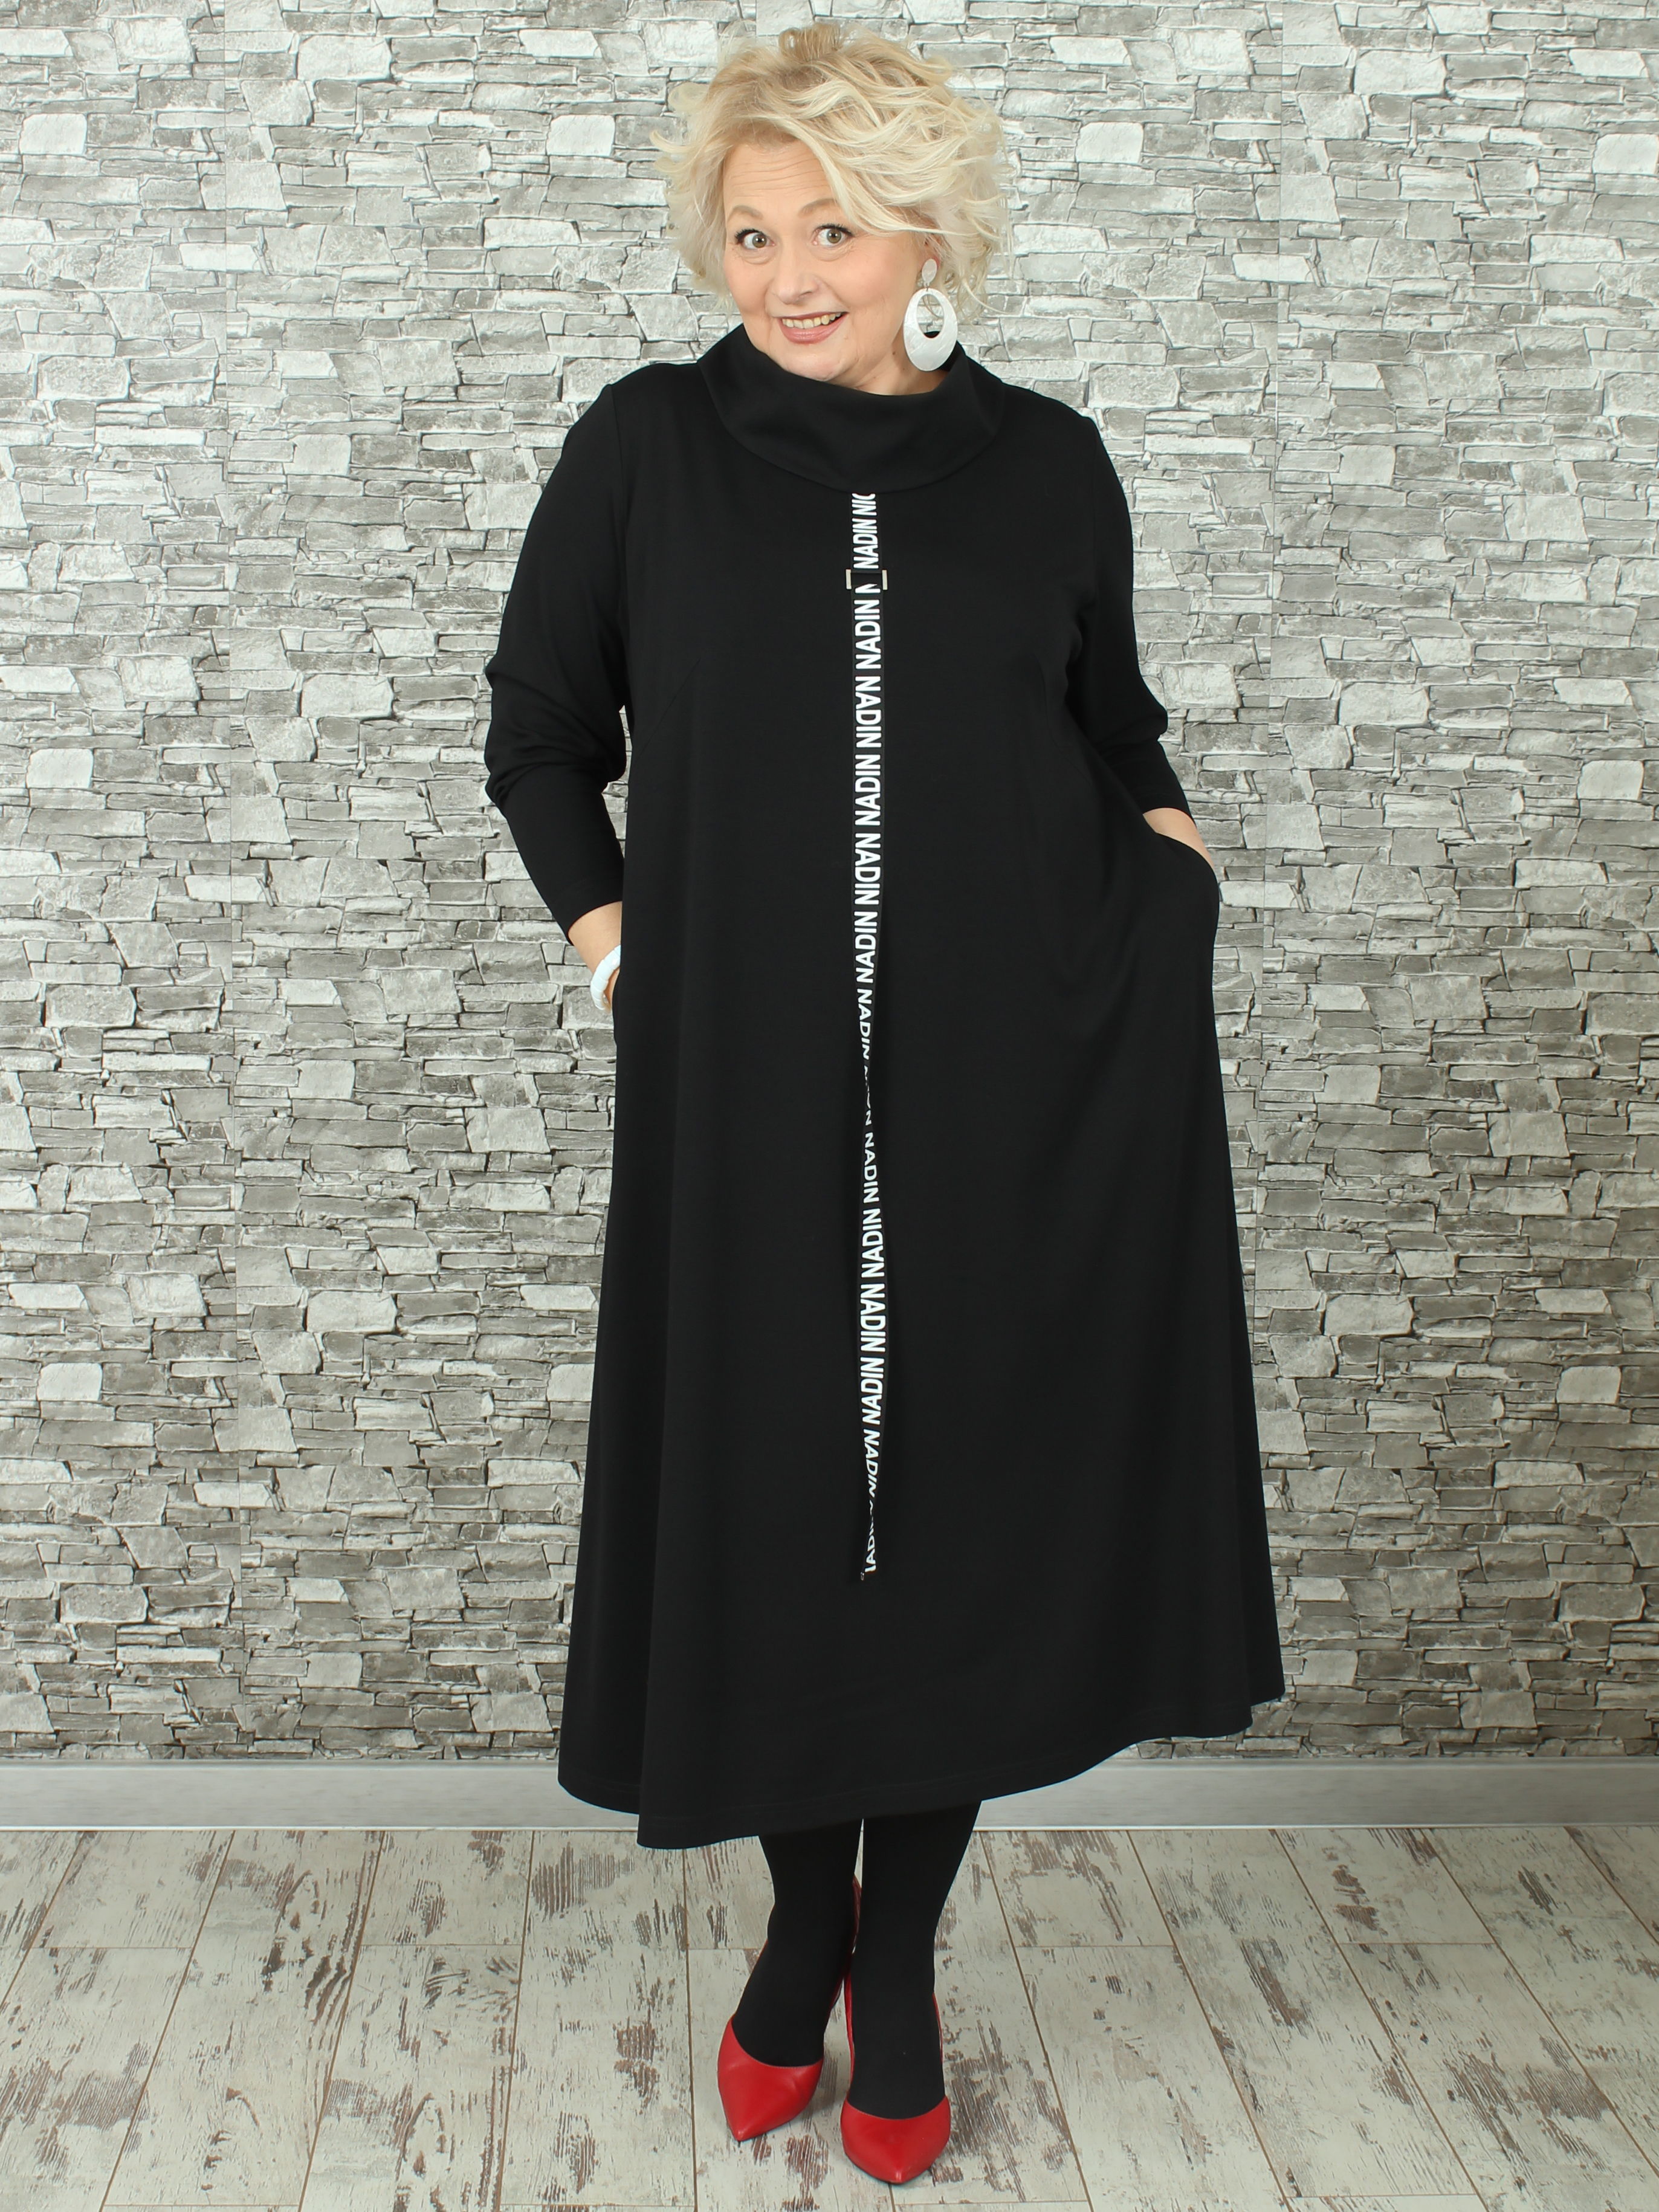 Женское платье NadiN 1676/1 58 размер Чёрное